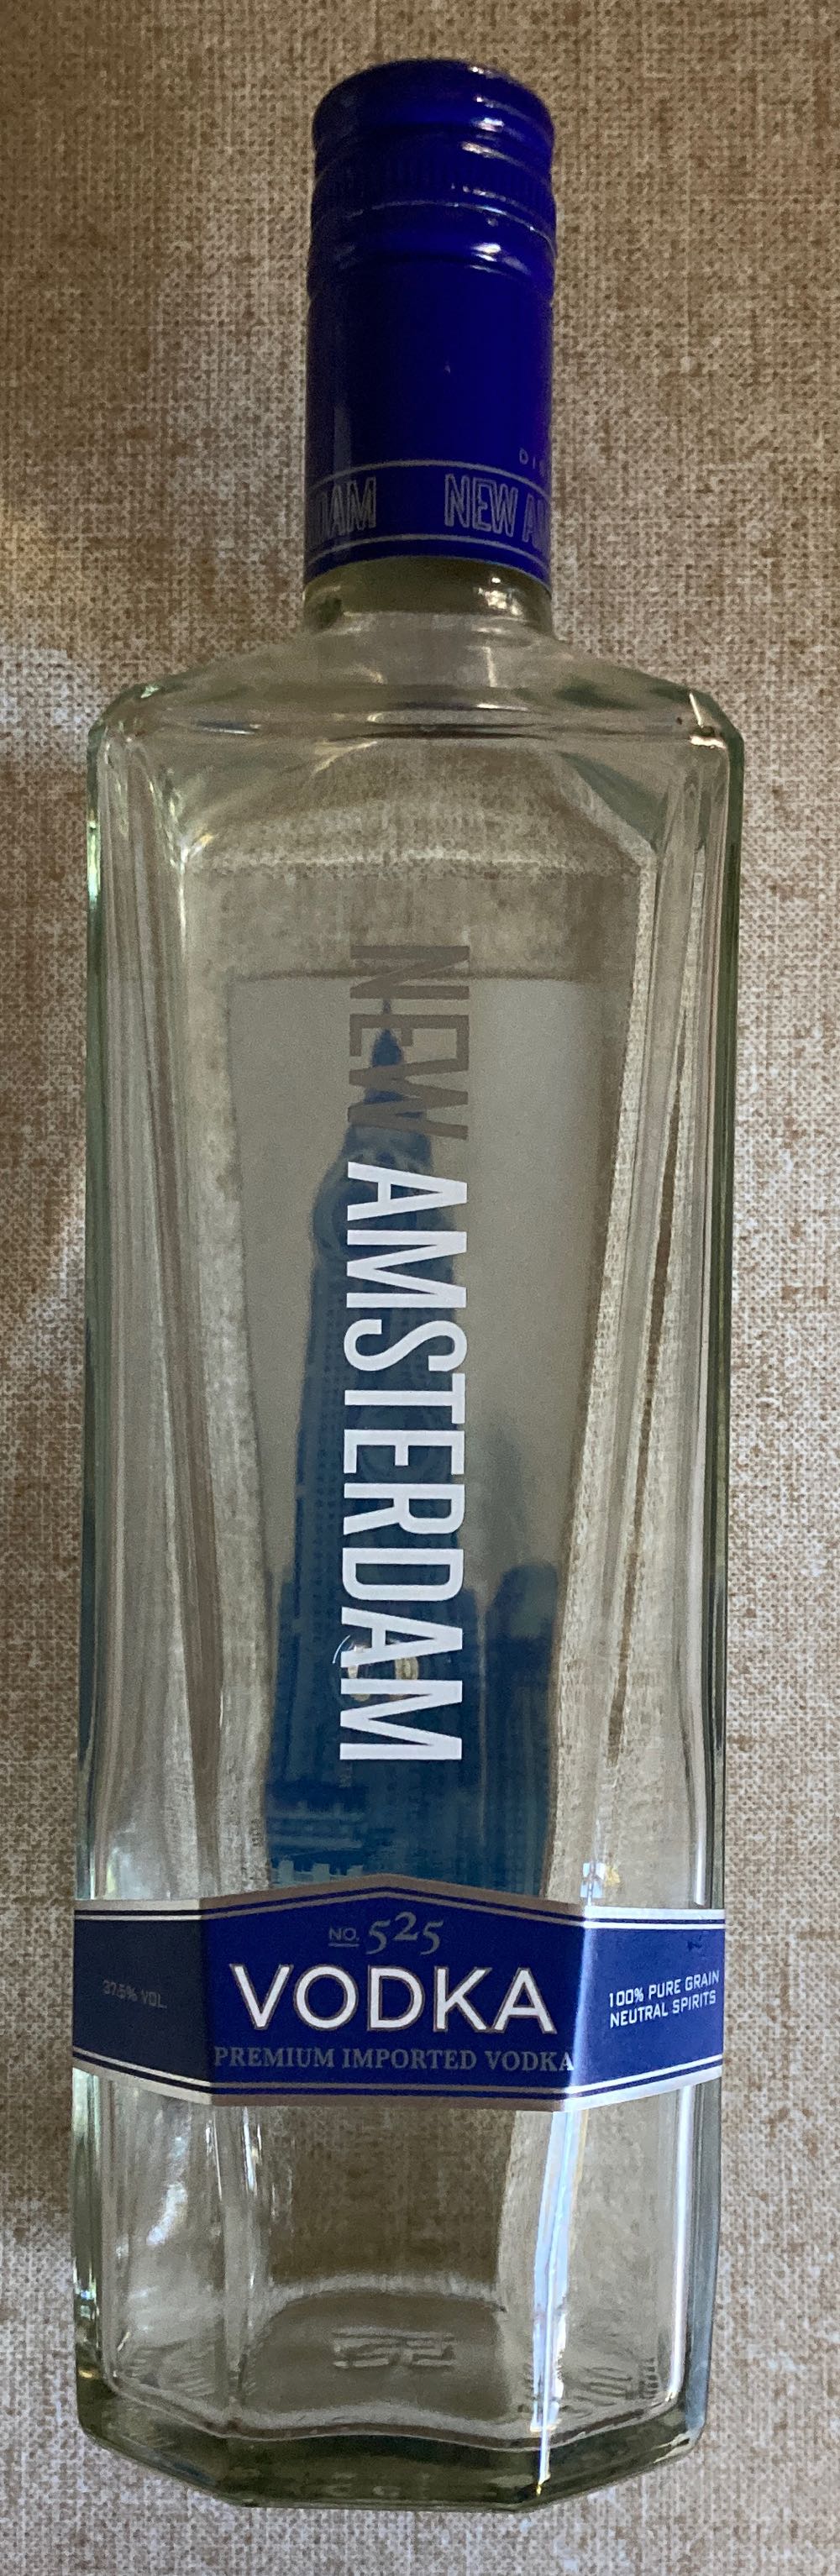 No. 525 Vodka - New Amsterdam Spirits Company (700 mL) alcohol collectible [Barcode 085000022160] - Main Image 1